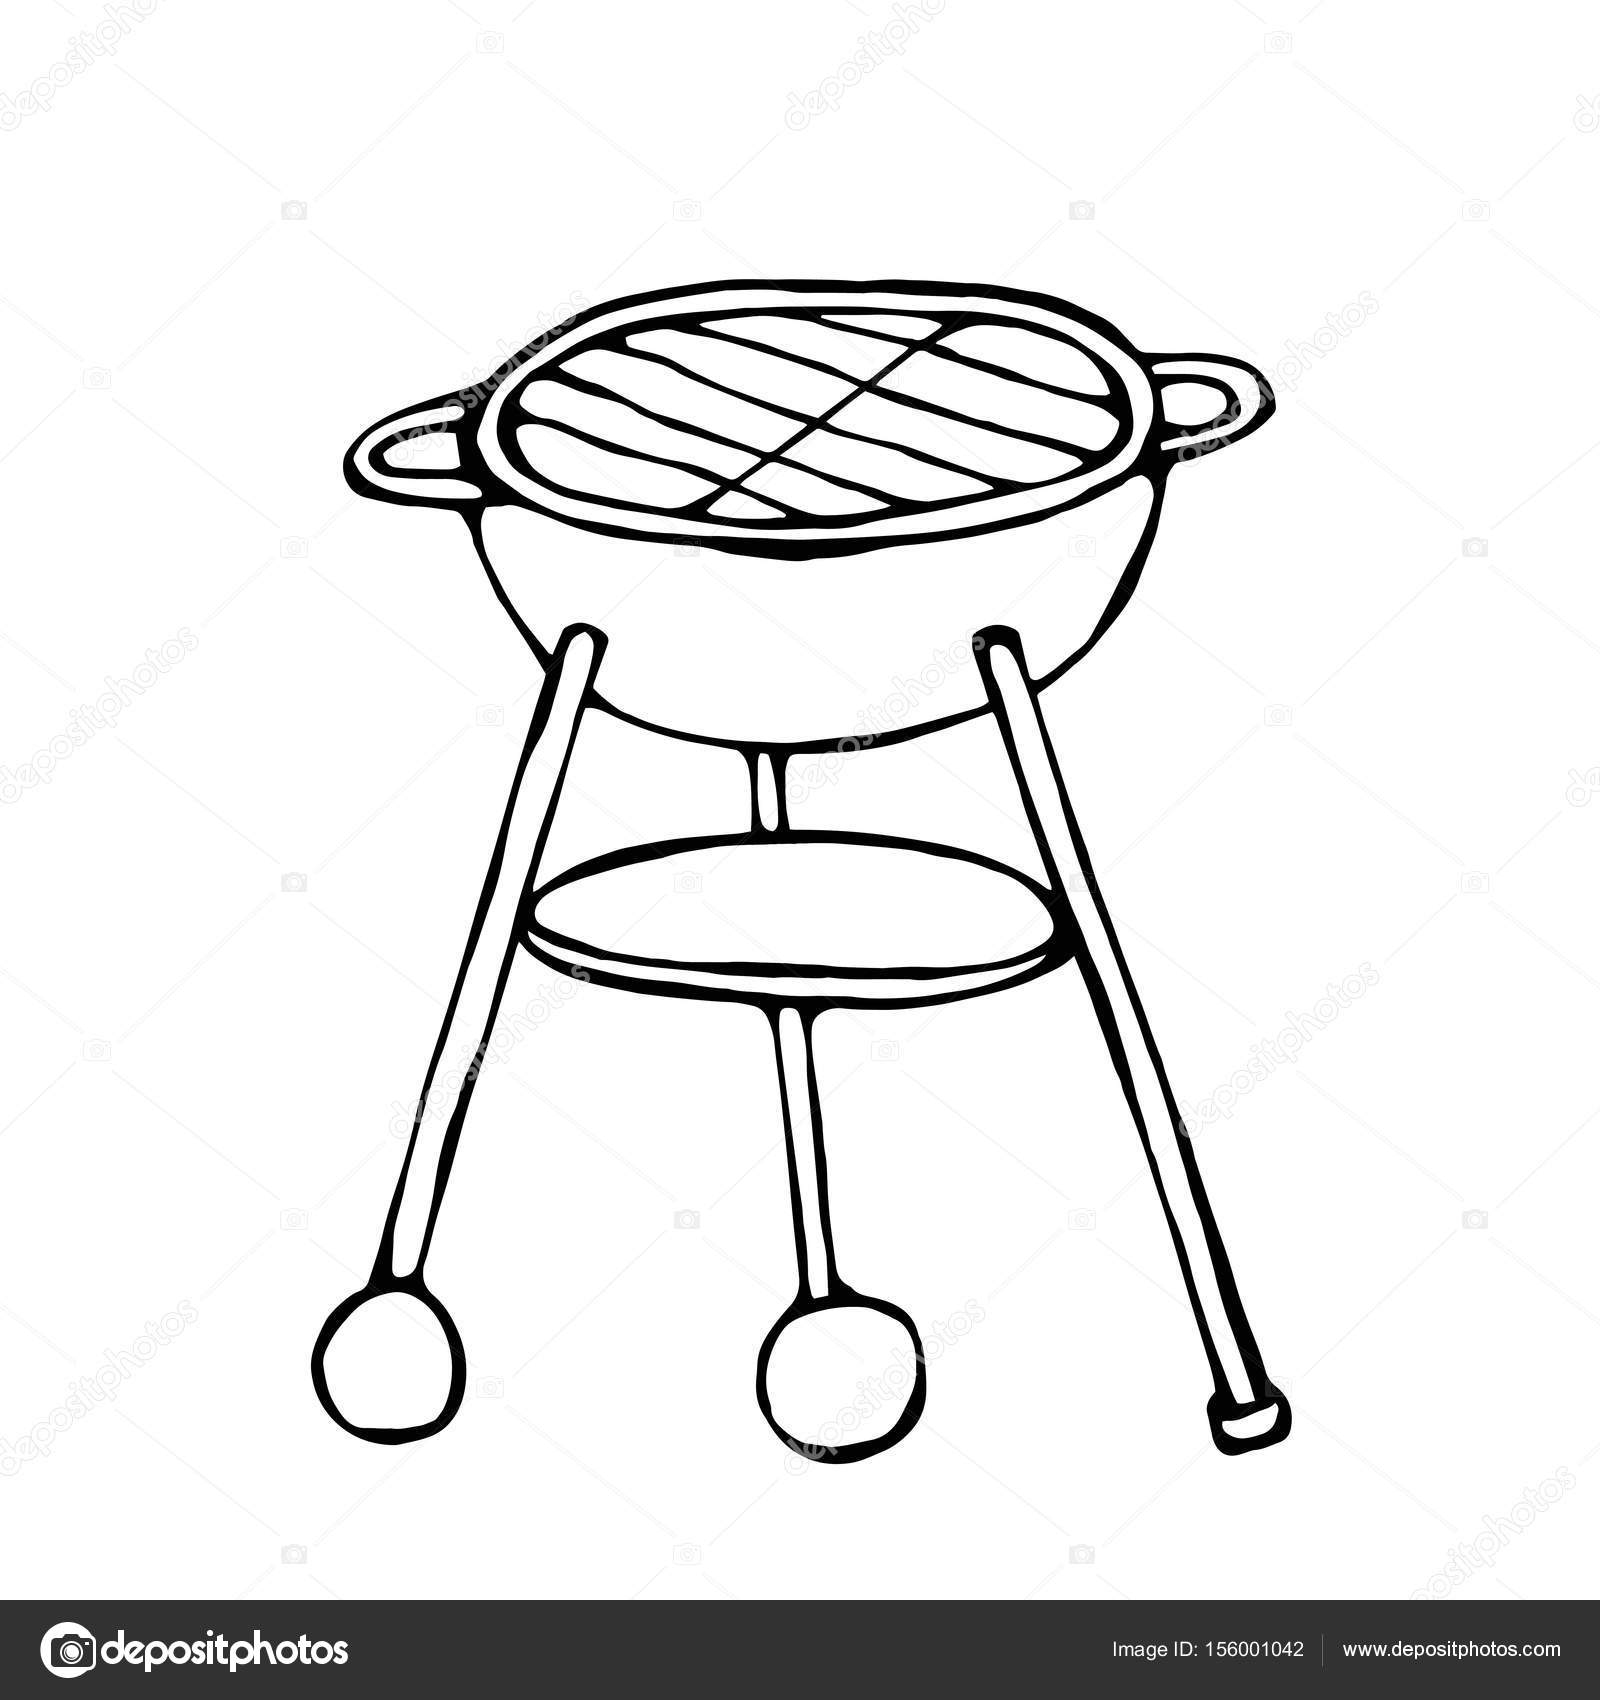 https://st3.depositphotos.com/10590712/15600/v/1600/depositphotos_156001042-stock-illustration-bbq-grill-summer-barbecue-equipment.jpg